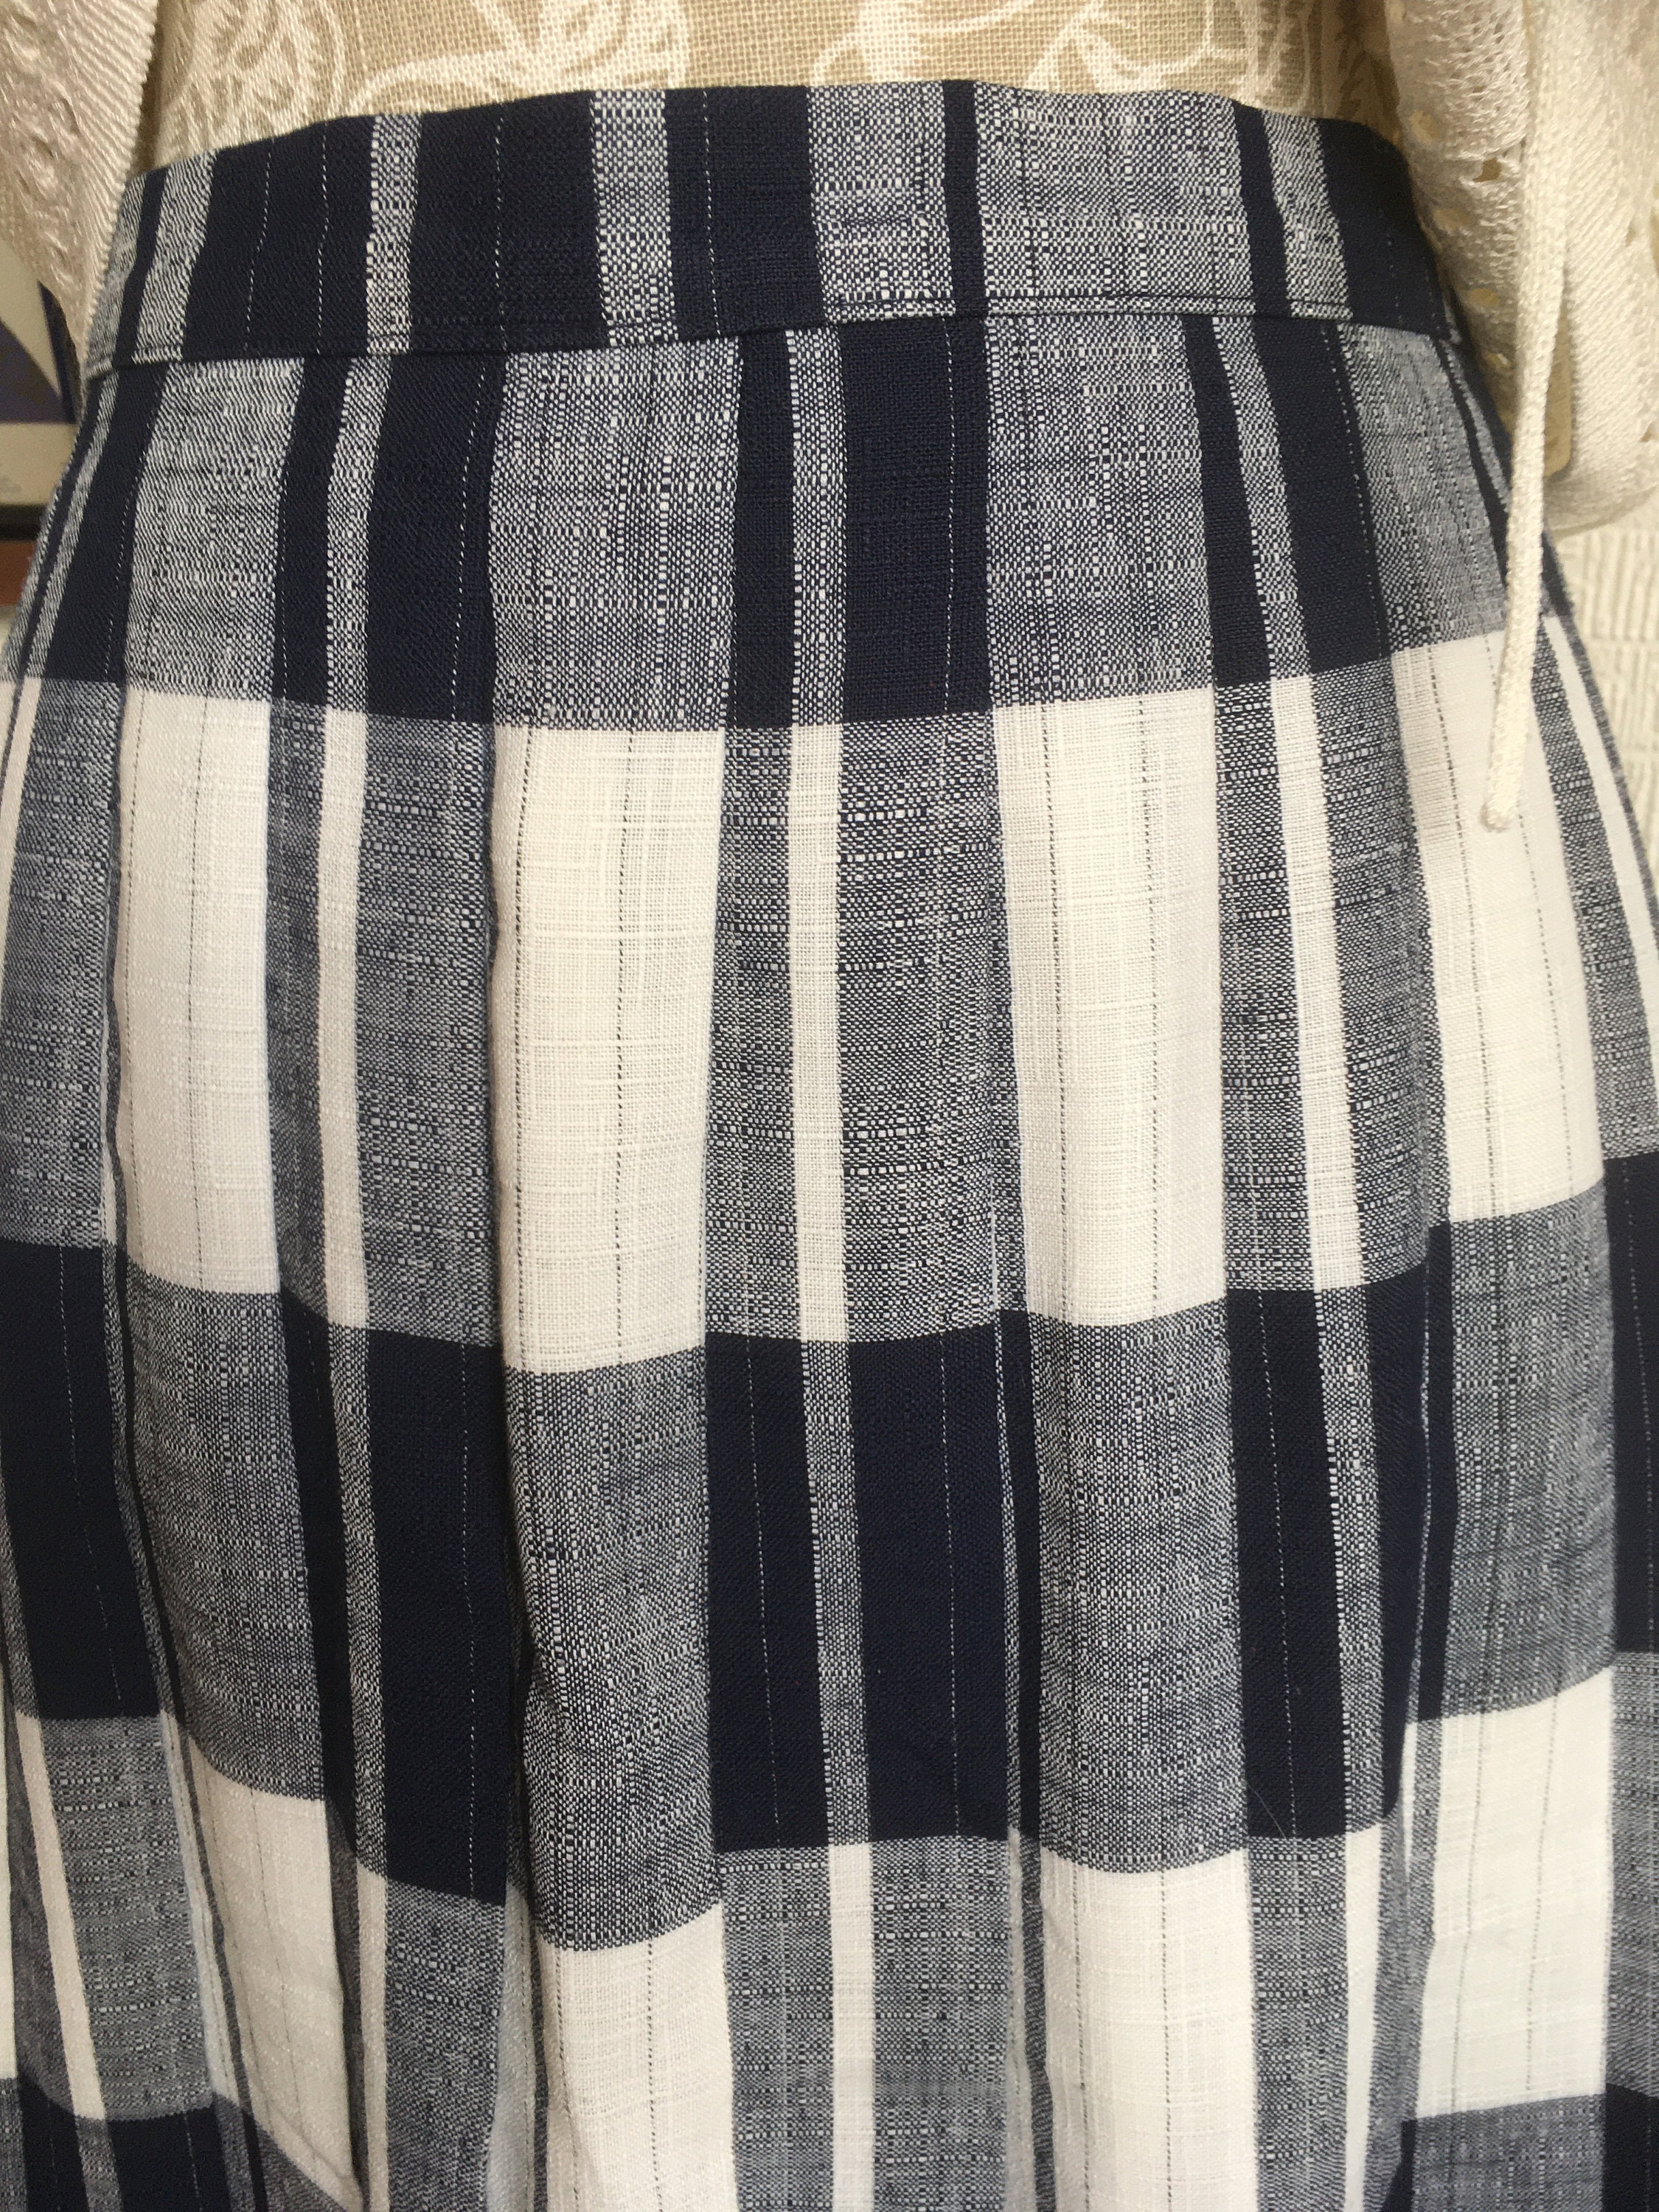 Vintage Pleated Skirt/vintage St Michael/uk10-12/summer - Etsy UK